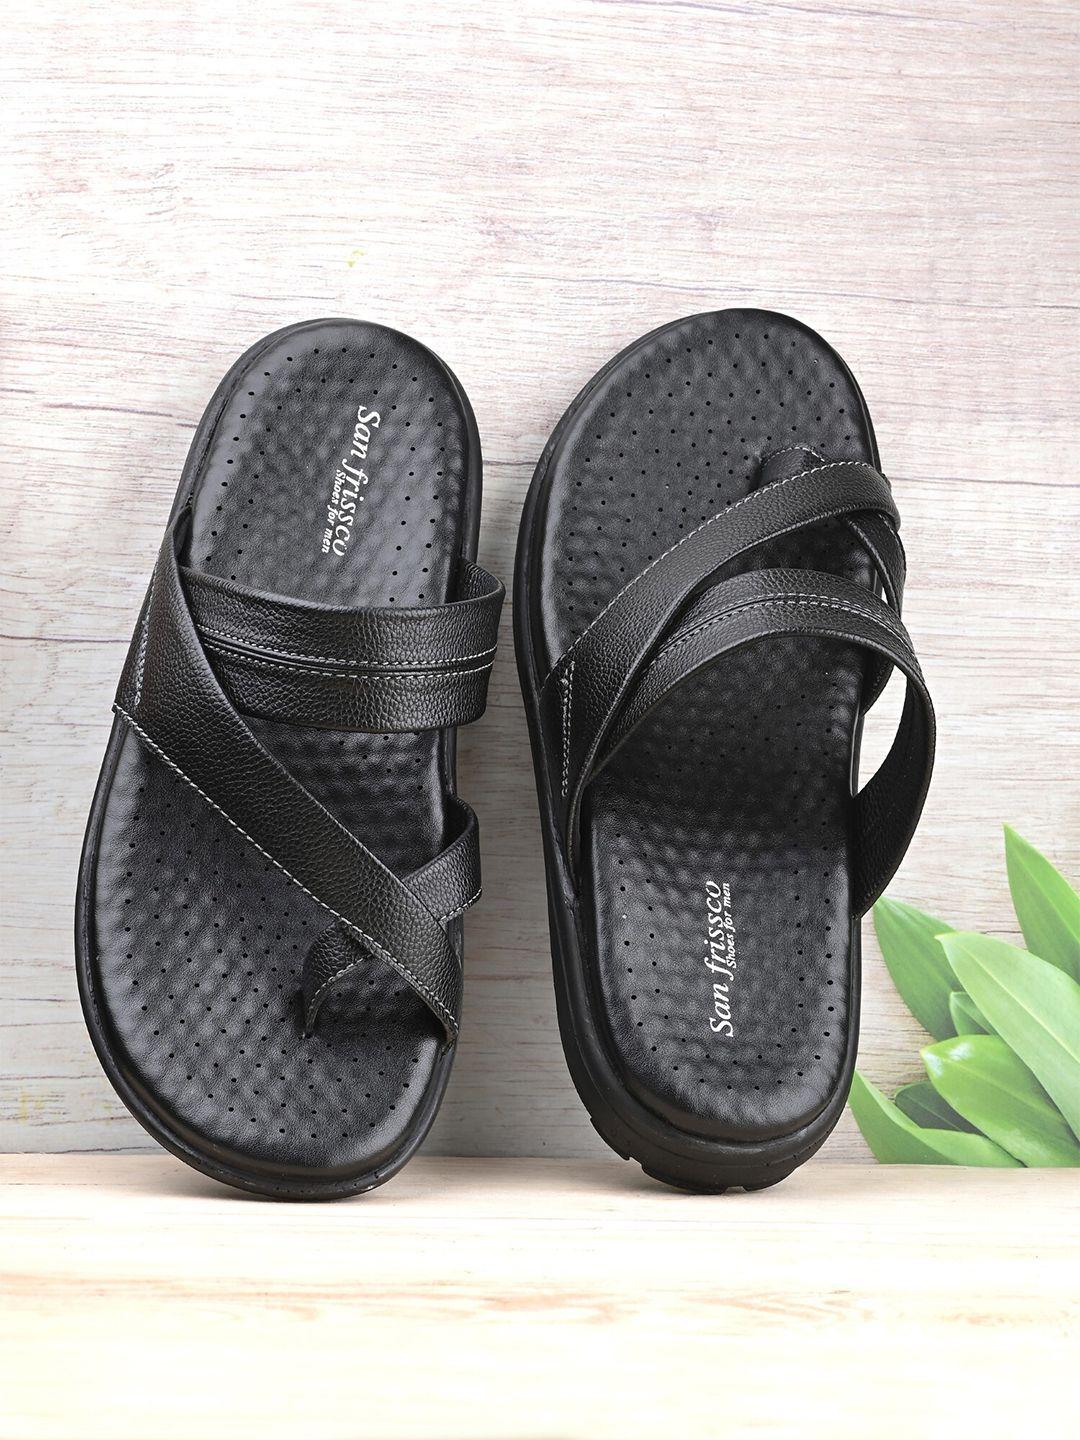 san frissco men black comfort sandals